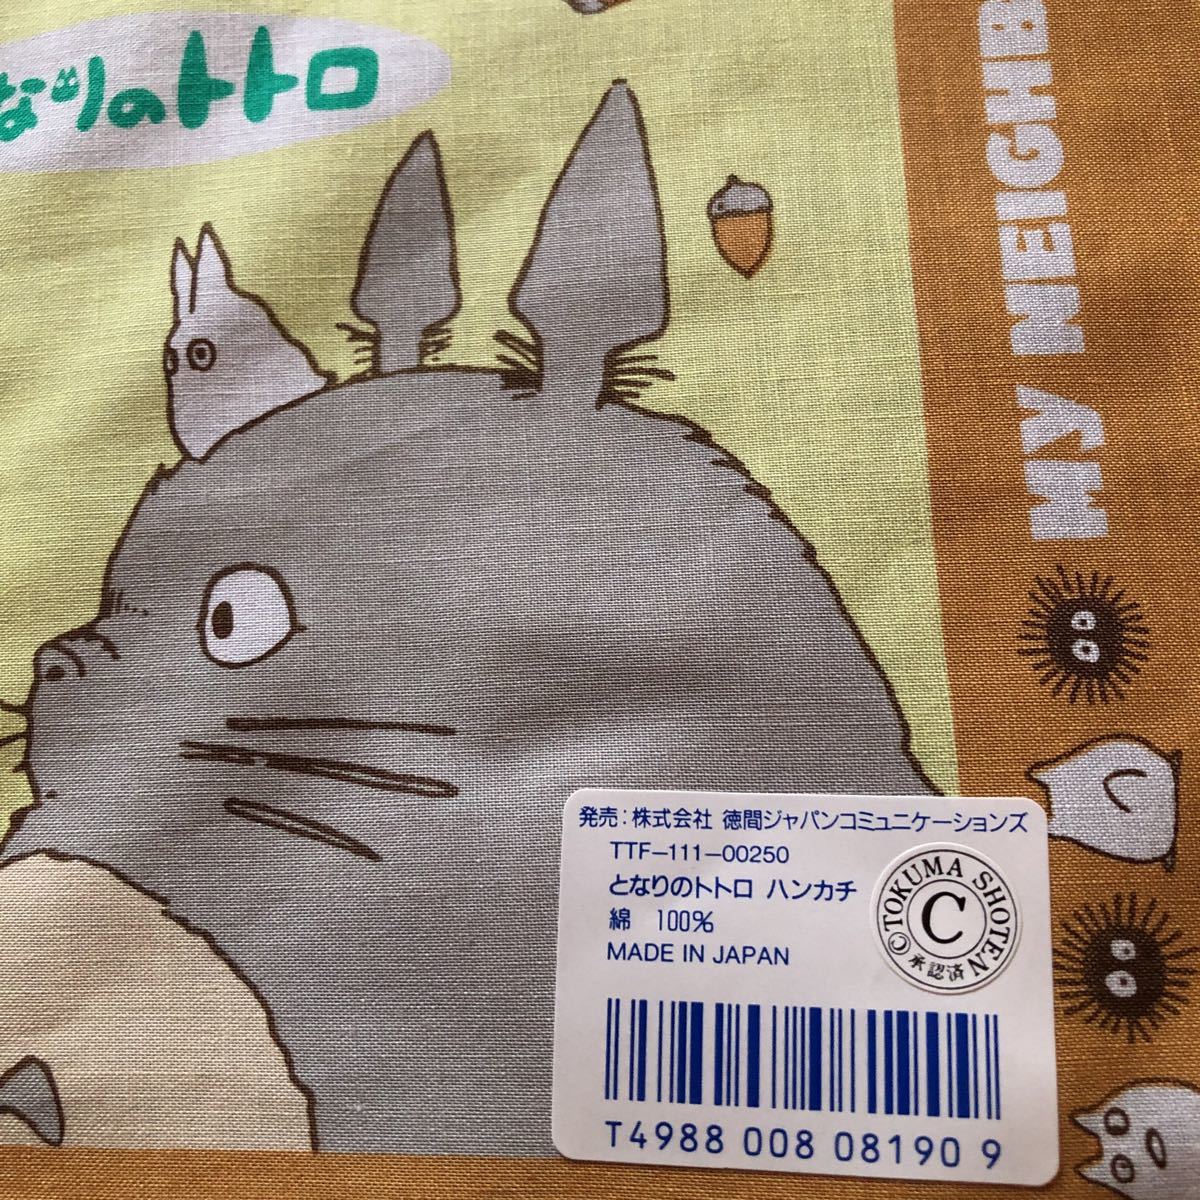 * retro * редкость редкий товар Tonari no Totoro носовой платок желтый подлинная вещь 